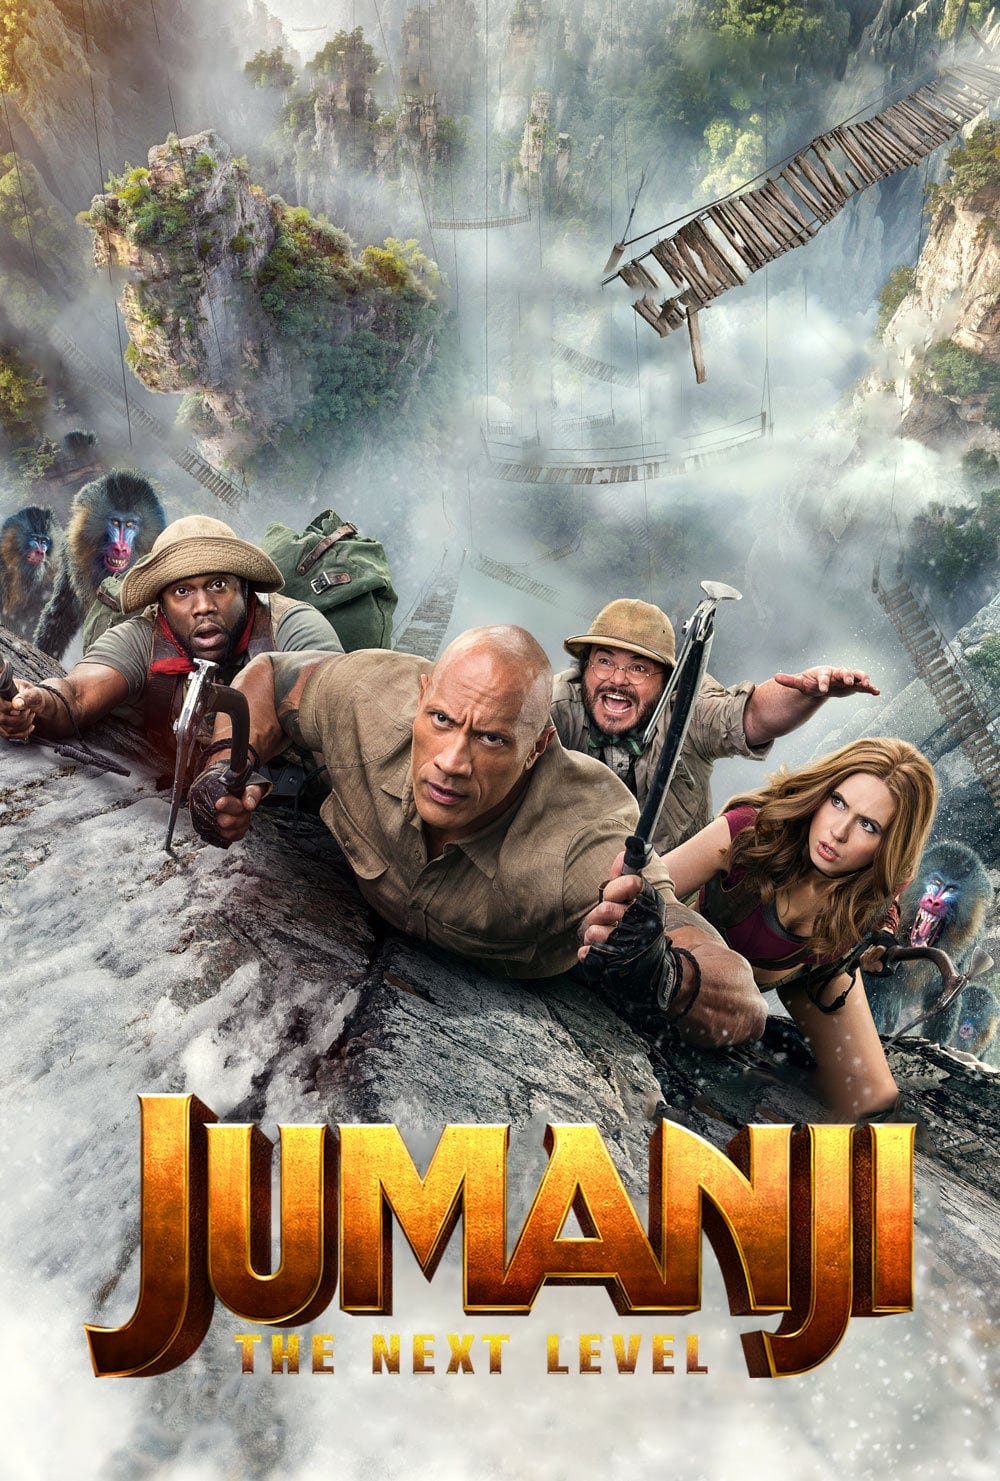 Jumanji 2 release date